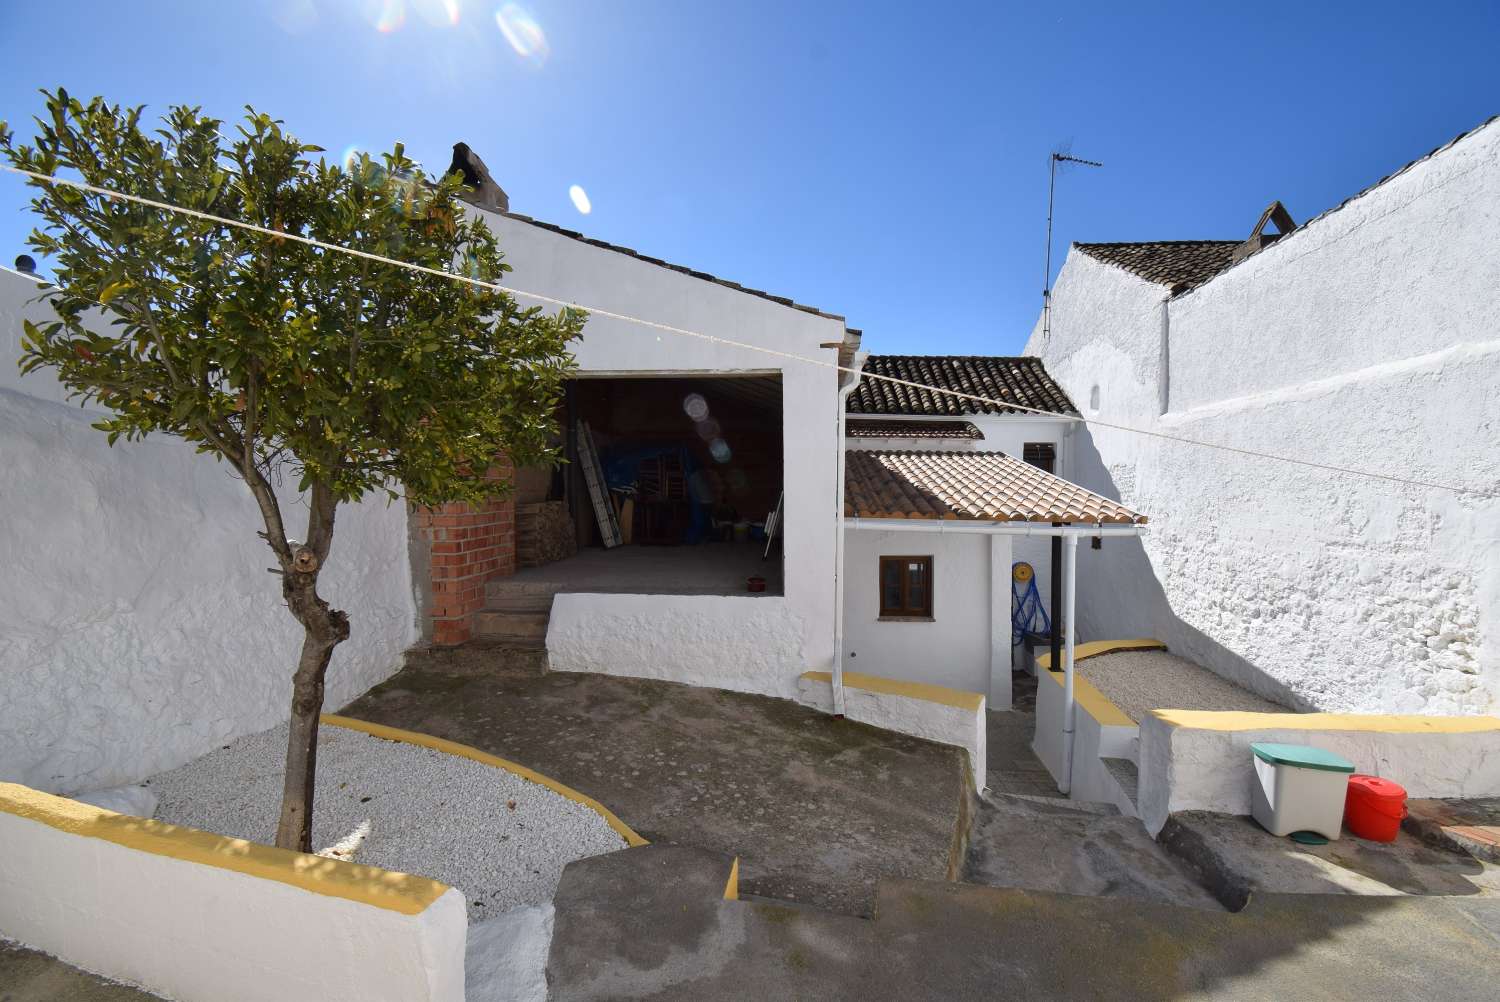 Hübsches, komplett renoviertes Dorfhaus mit Terrasse